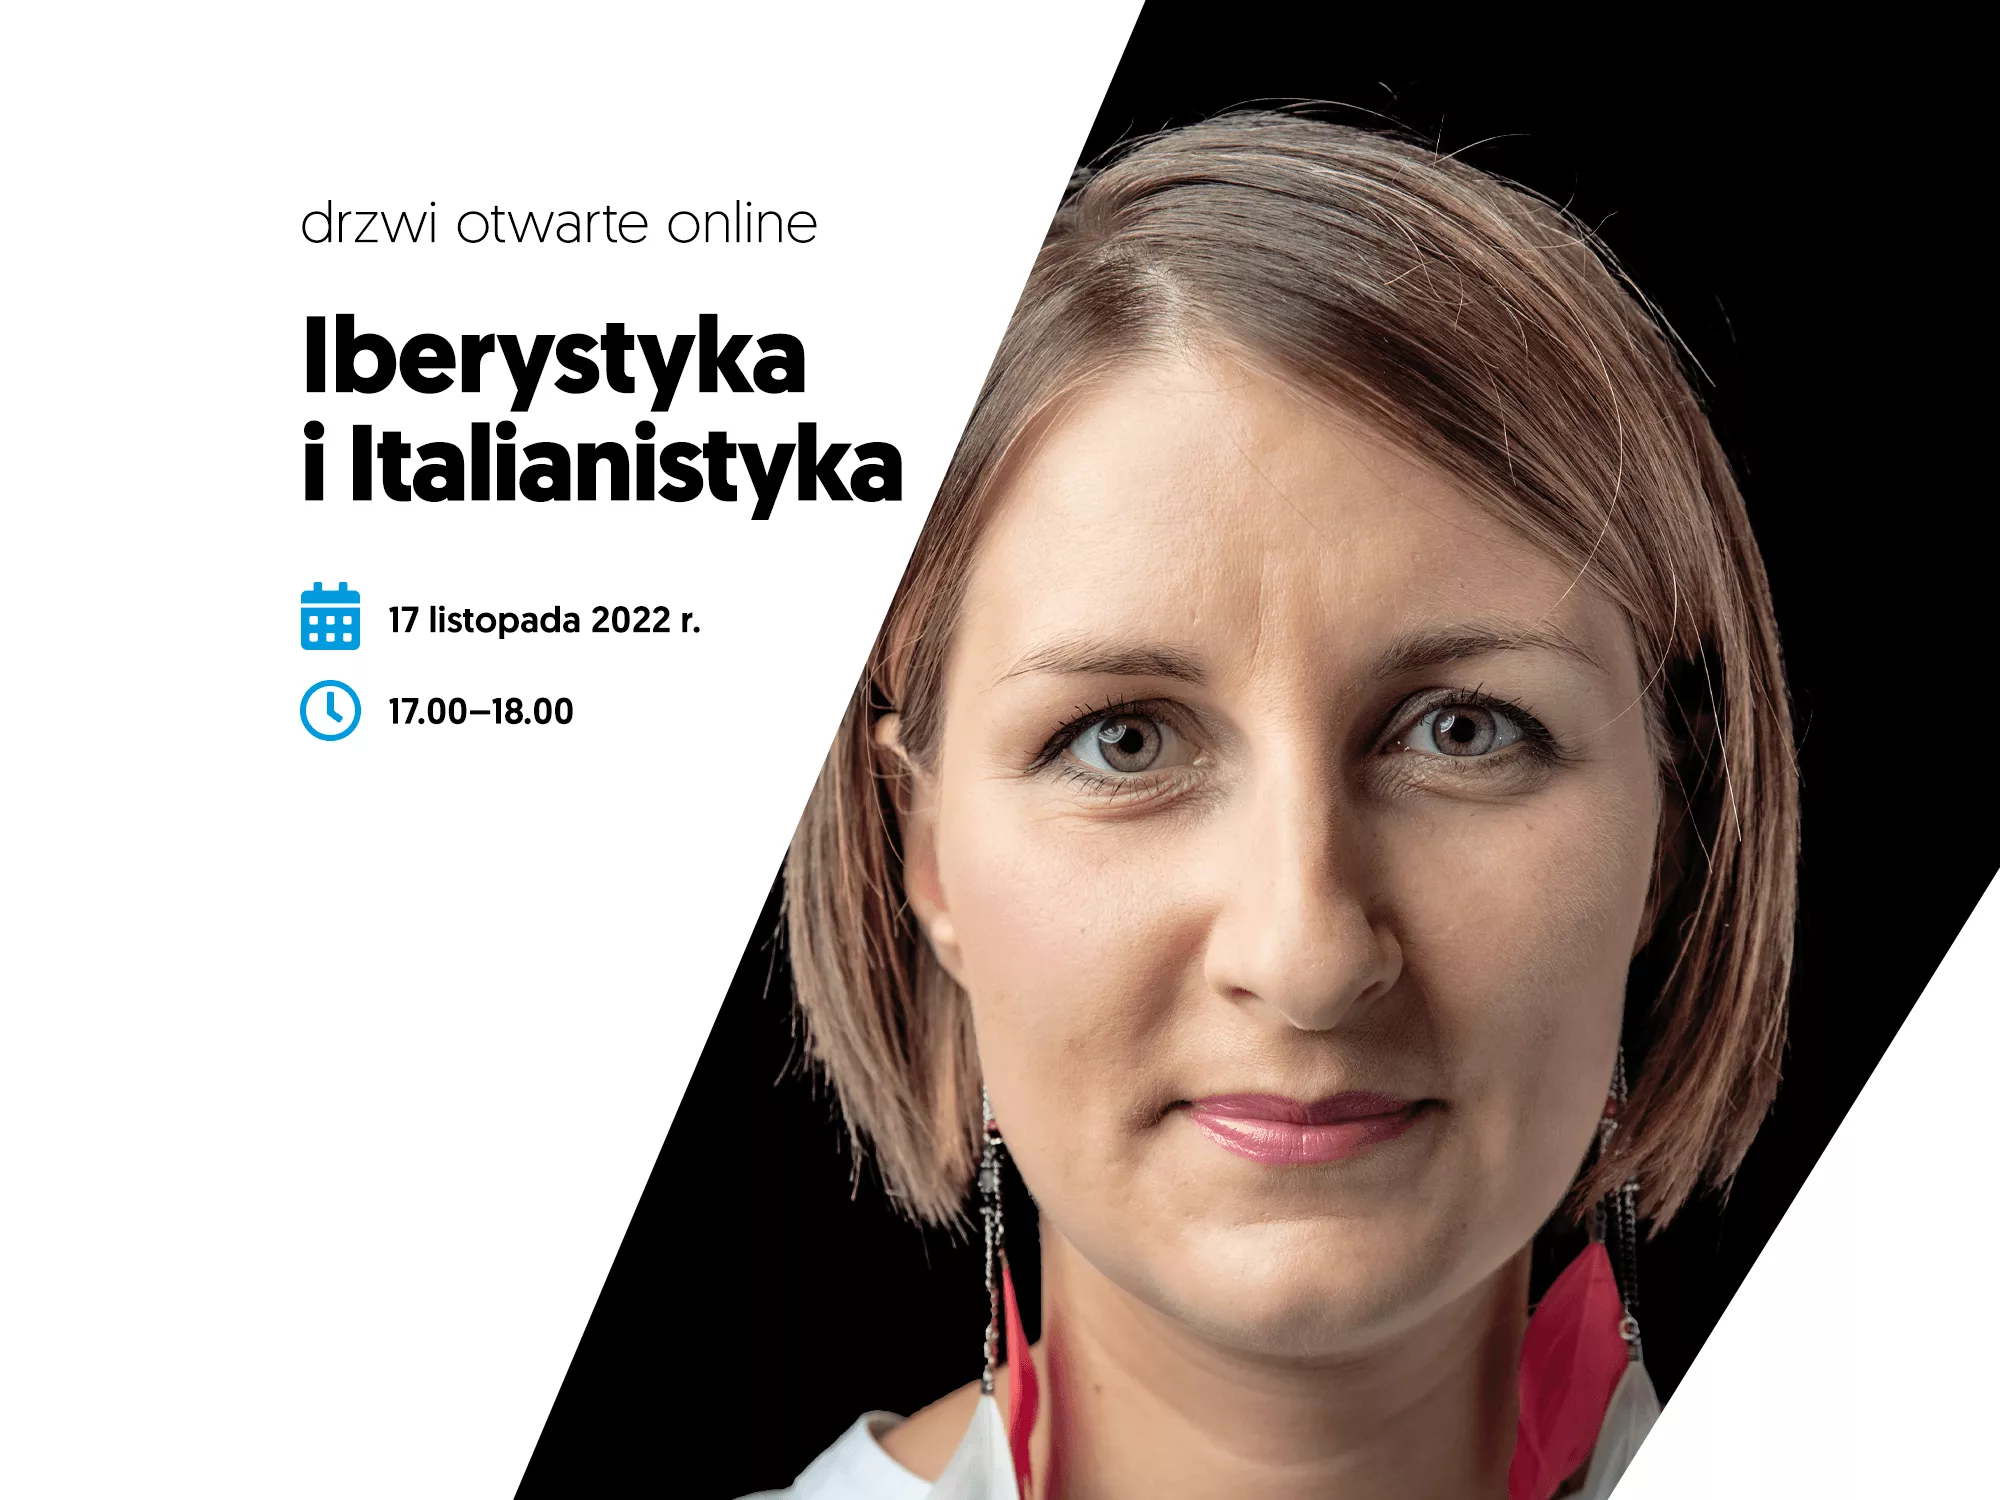 Iberystyka, italianistyka – weź udział w spotkaniu online